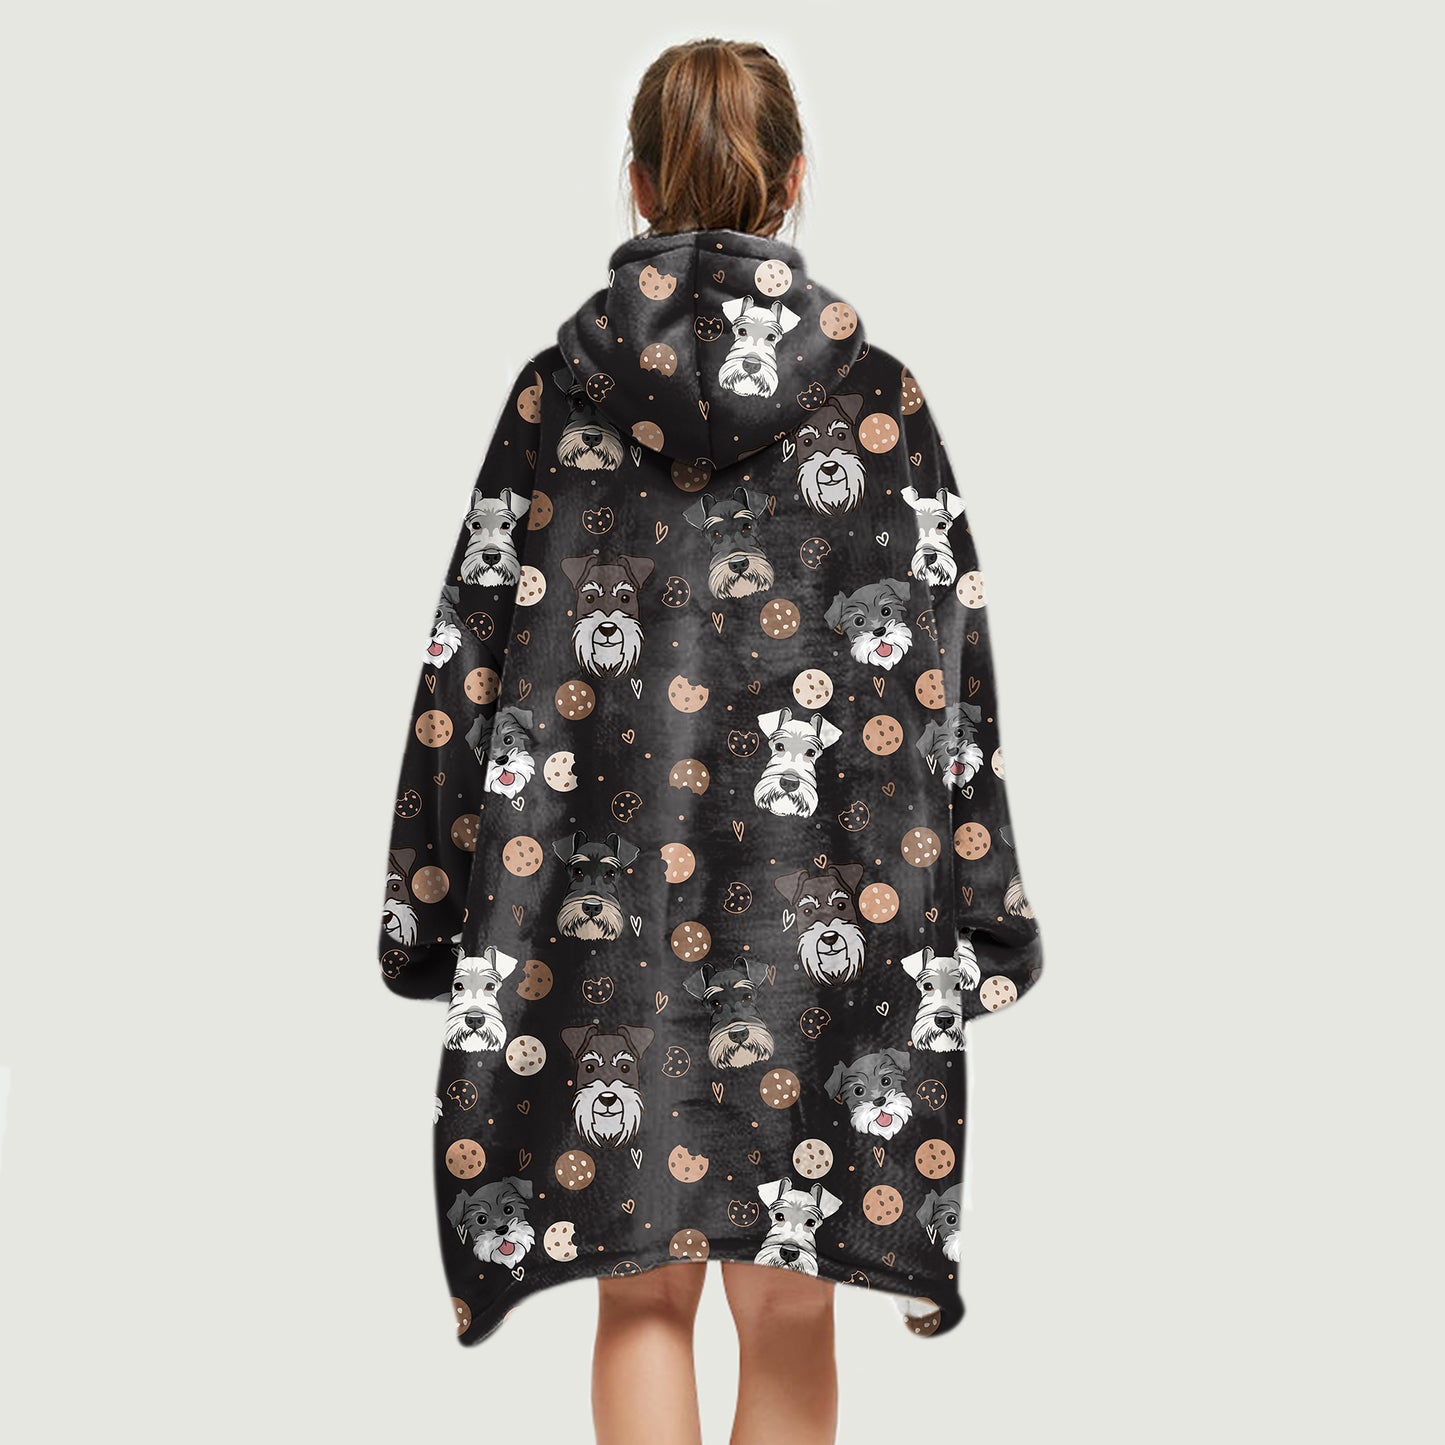 Hello Winter - Schnauzer Fleece Blanket Hoodie V1